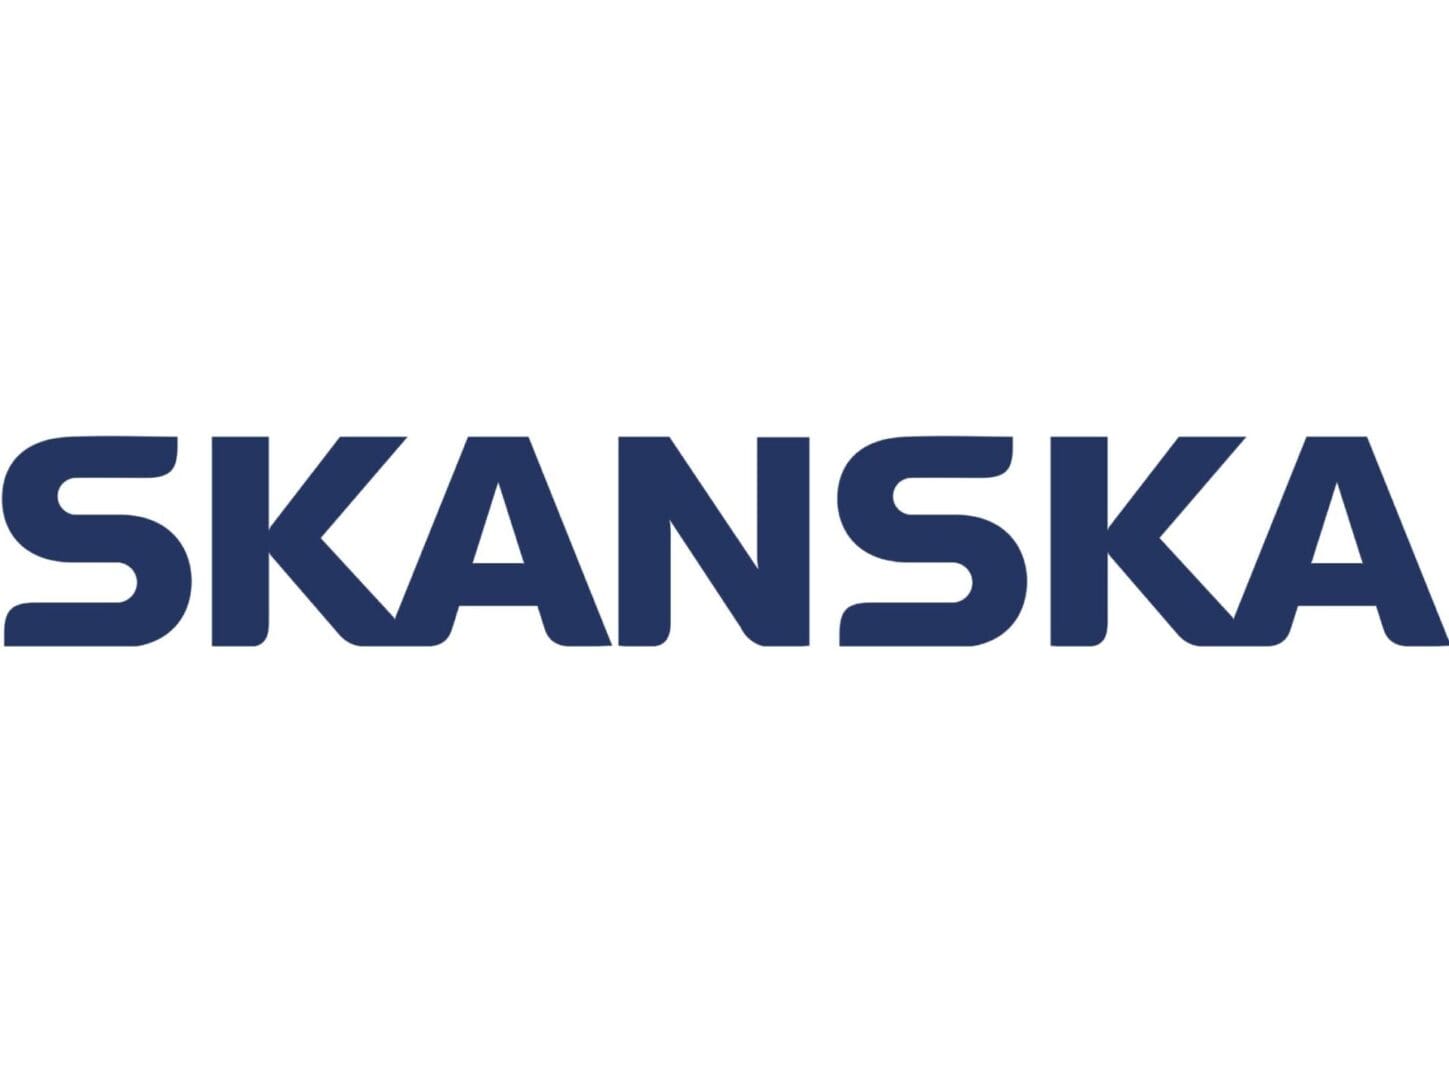 A logo of skanska is shown.